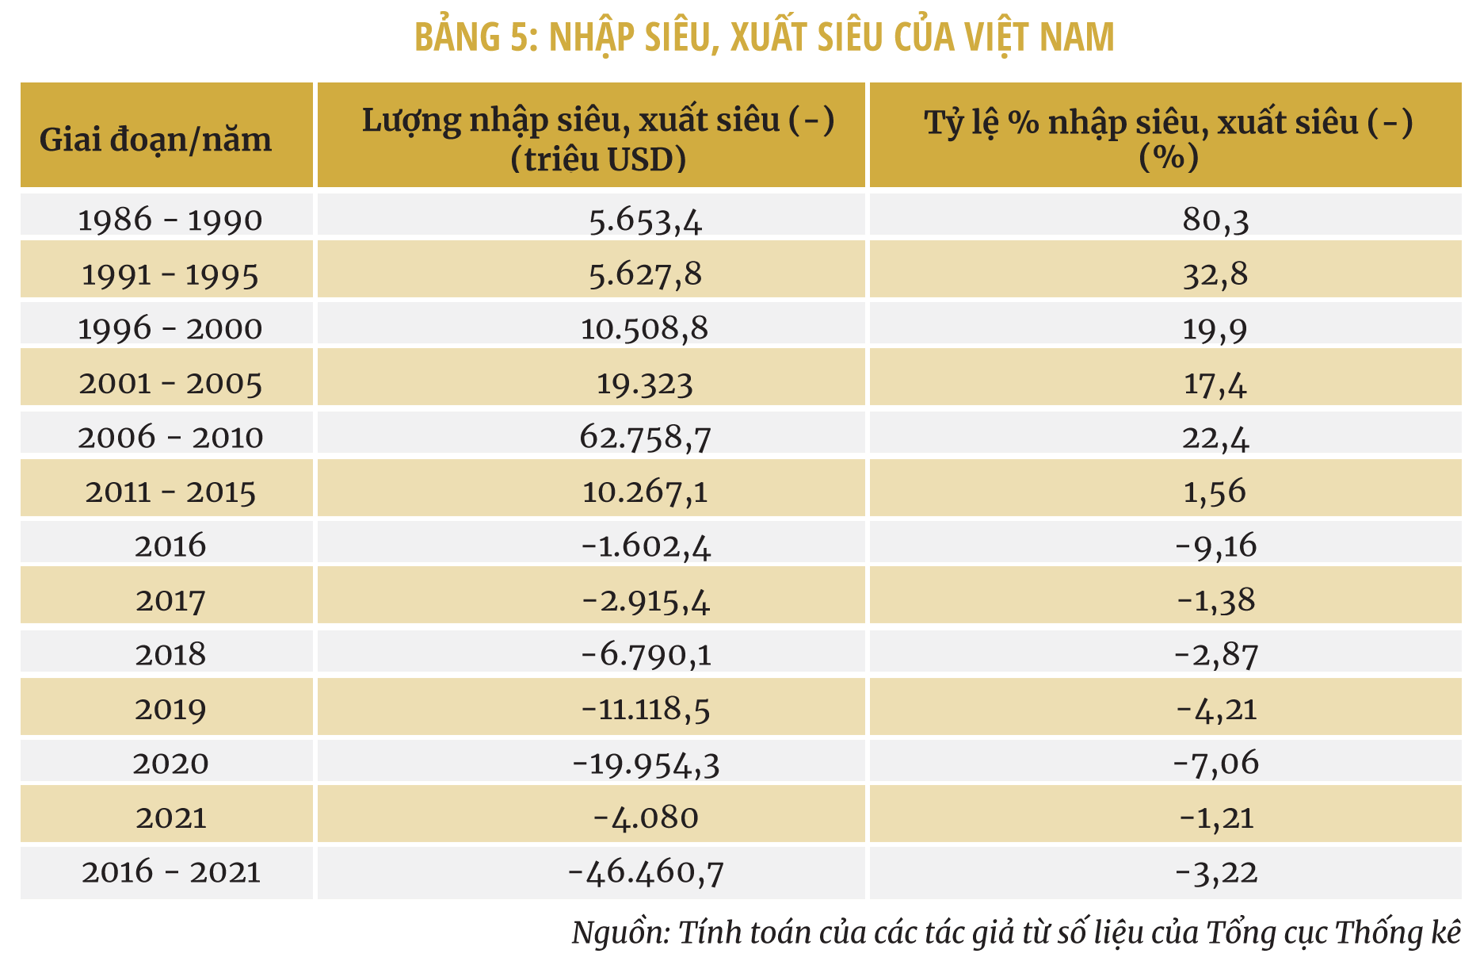 Một số giải pháp thúc đẩy xuất khẩu hàng hóa của Việt Nam đến năm 2030 - Ảnh 5